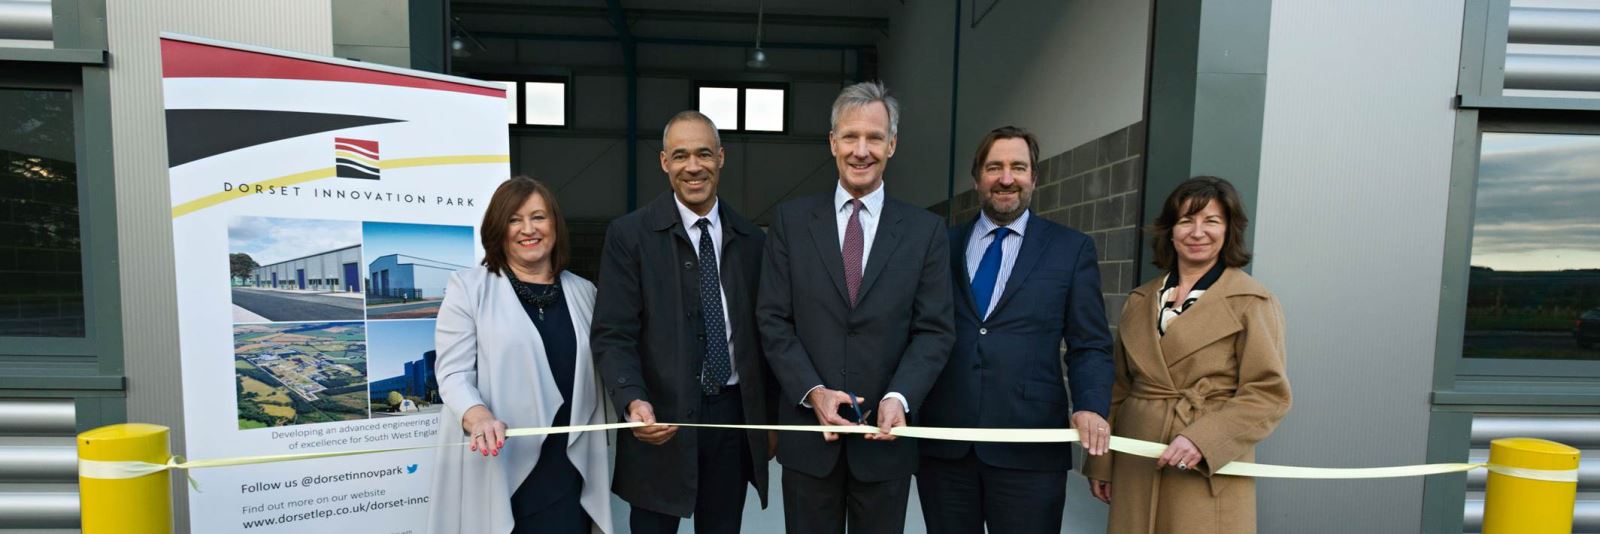 Dorset Innovation Park opens